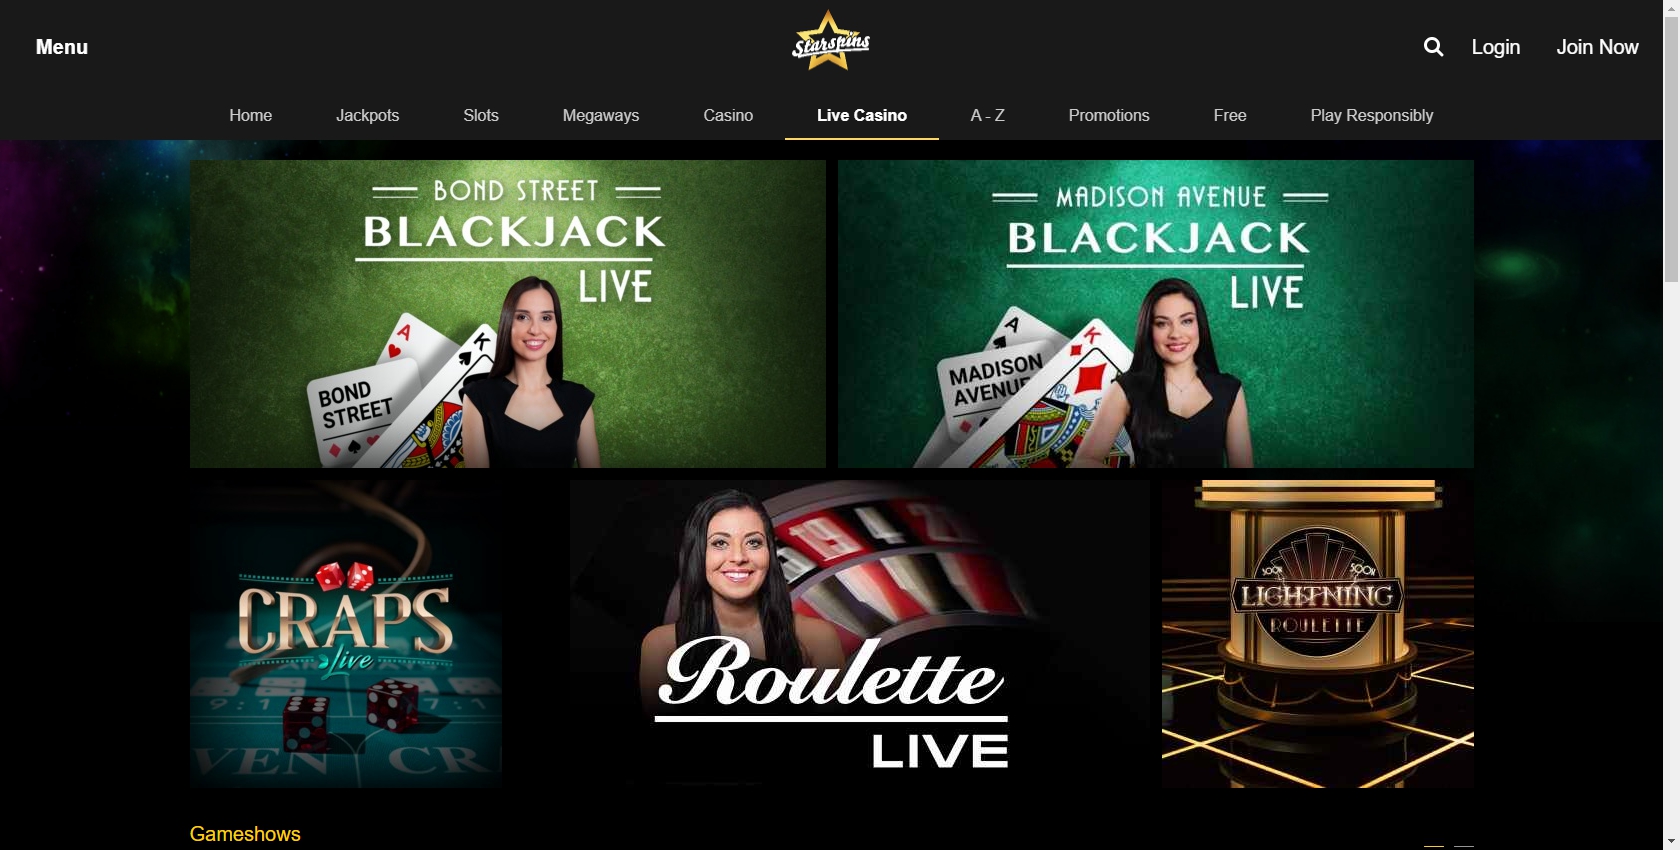 Starspins Casino Live Dealer Games